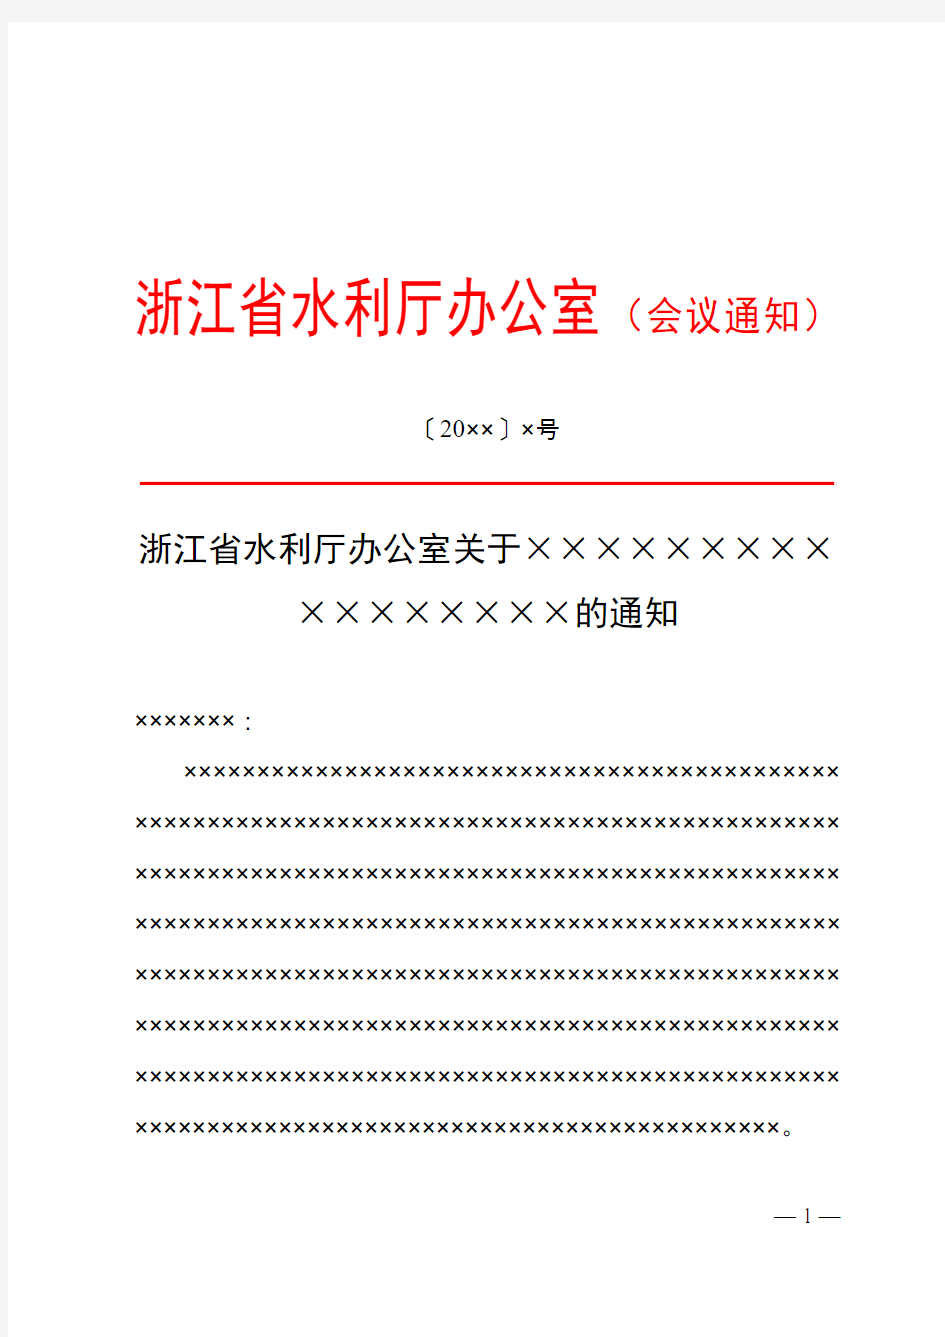 浙江省水利厅红头文件会议通知模板范例